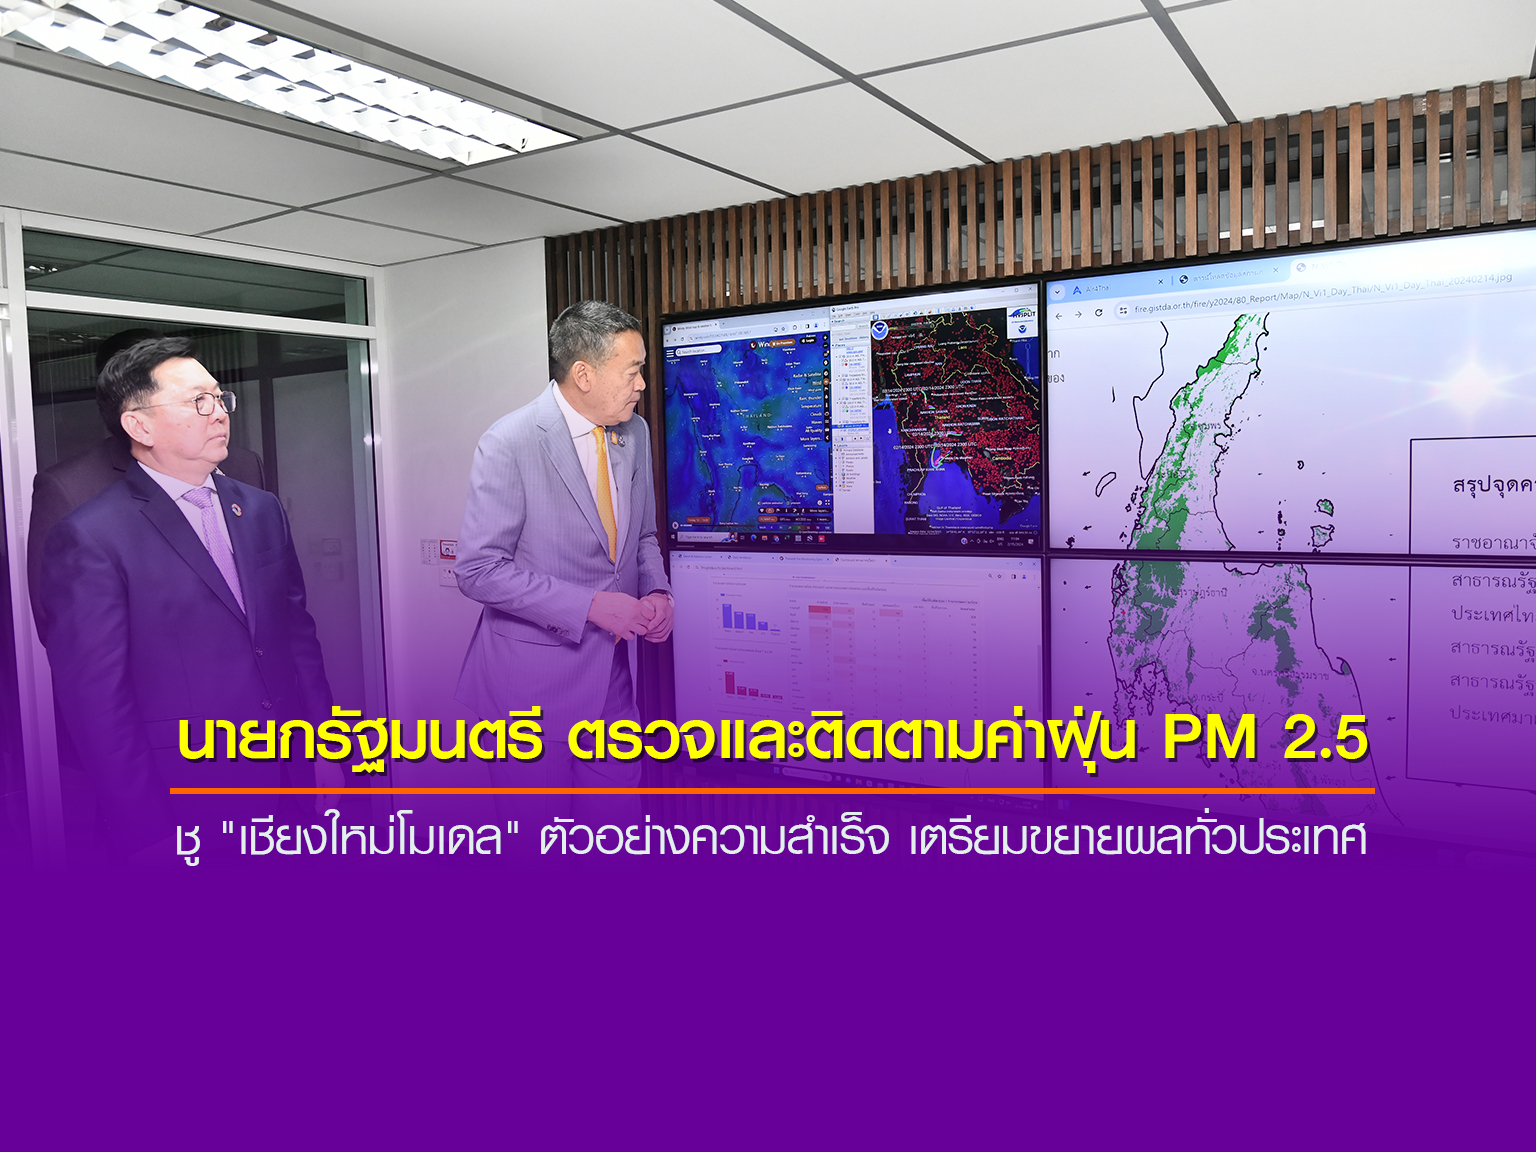 นายกรัฐมนตรี ตรวจและติดตามค่าปริมาณของฝุ่น PM 2.5 ชู "เชียงใหม่โมเดล" ตัวอย่างความสำเร็จ เตรียมขยายผลทั่วประเทศ